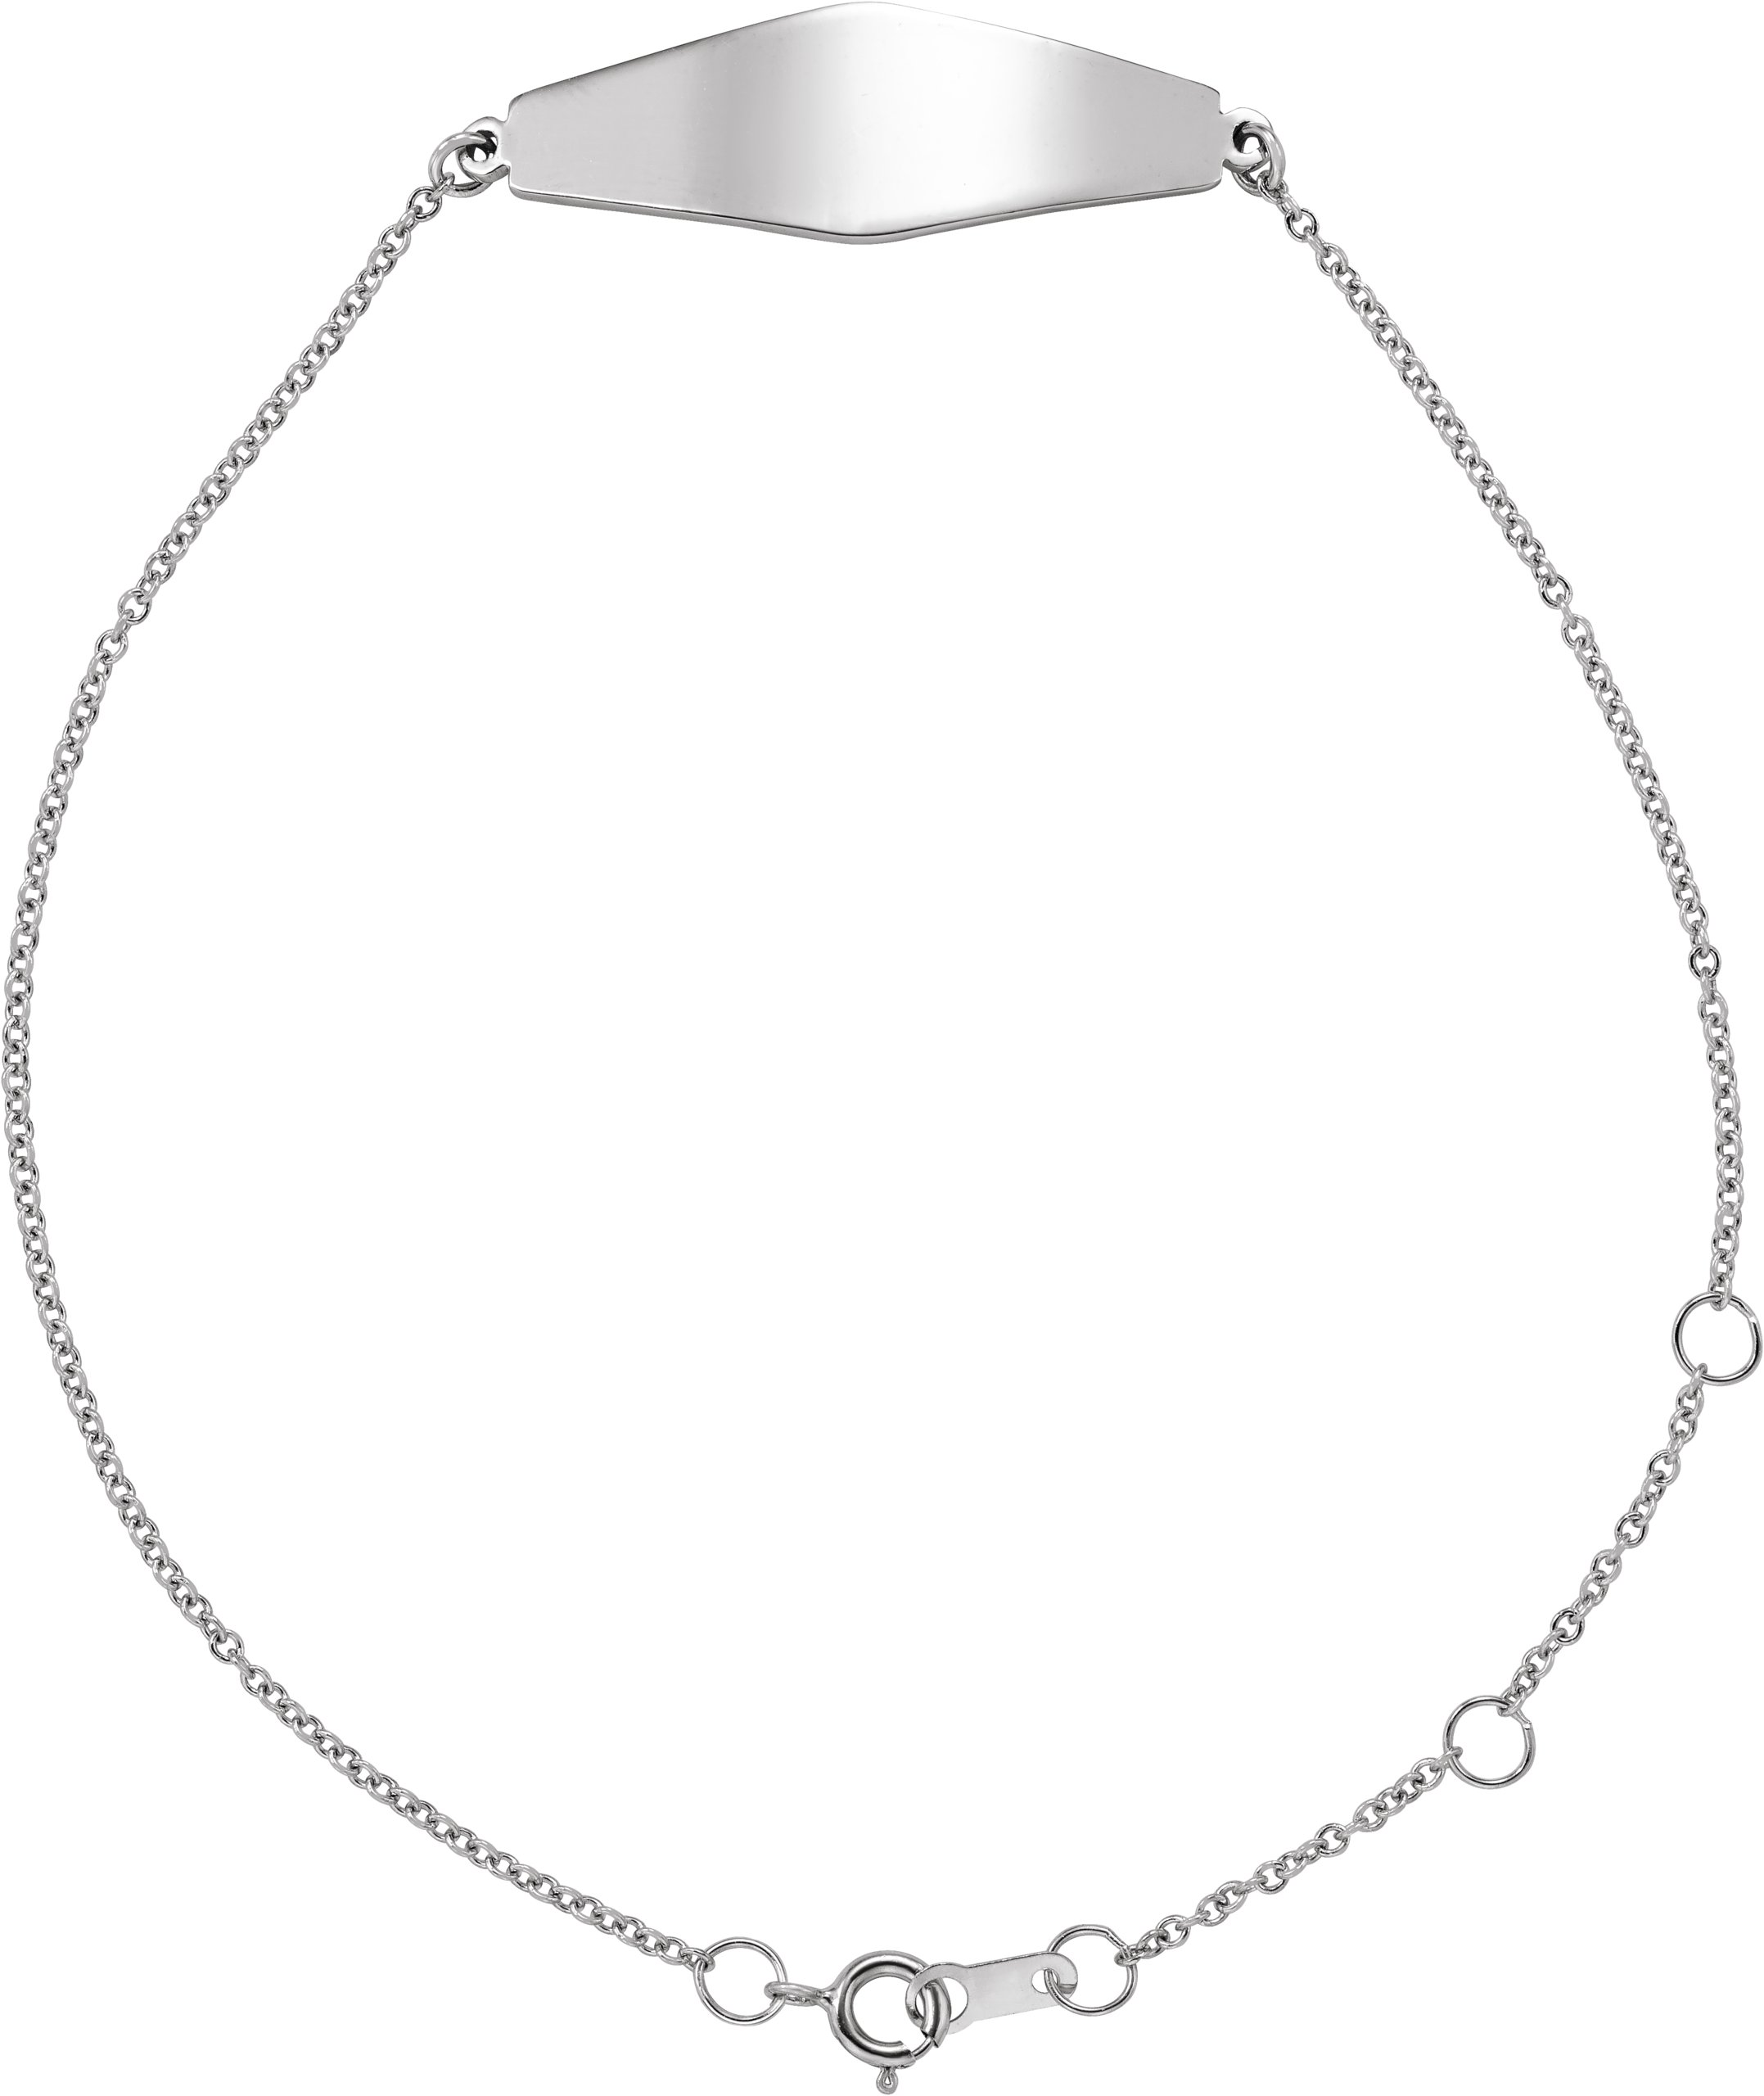 Sterling Silver Engravable Curved Bar 6 1/2-7 1/2" Bracelet